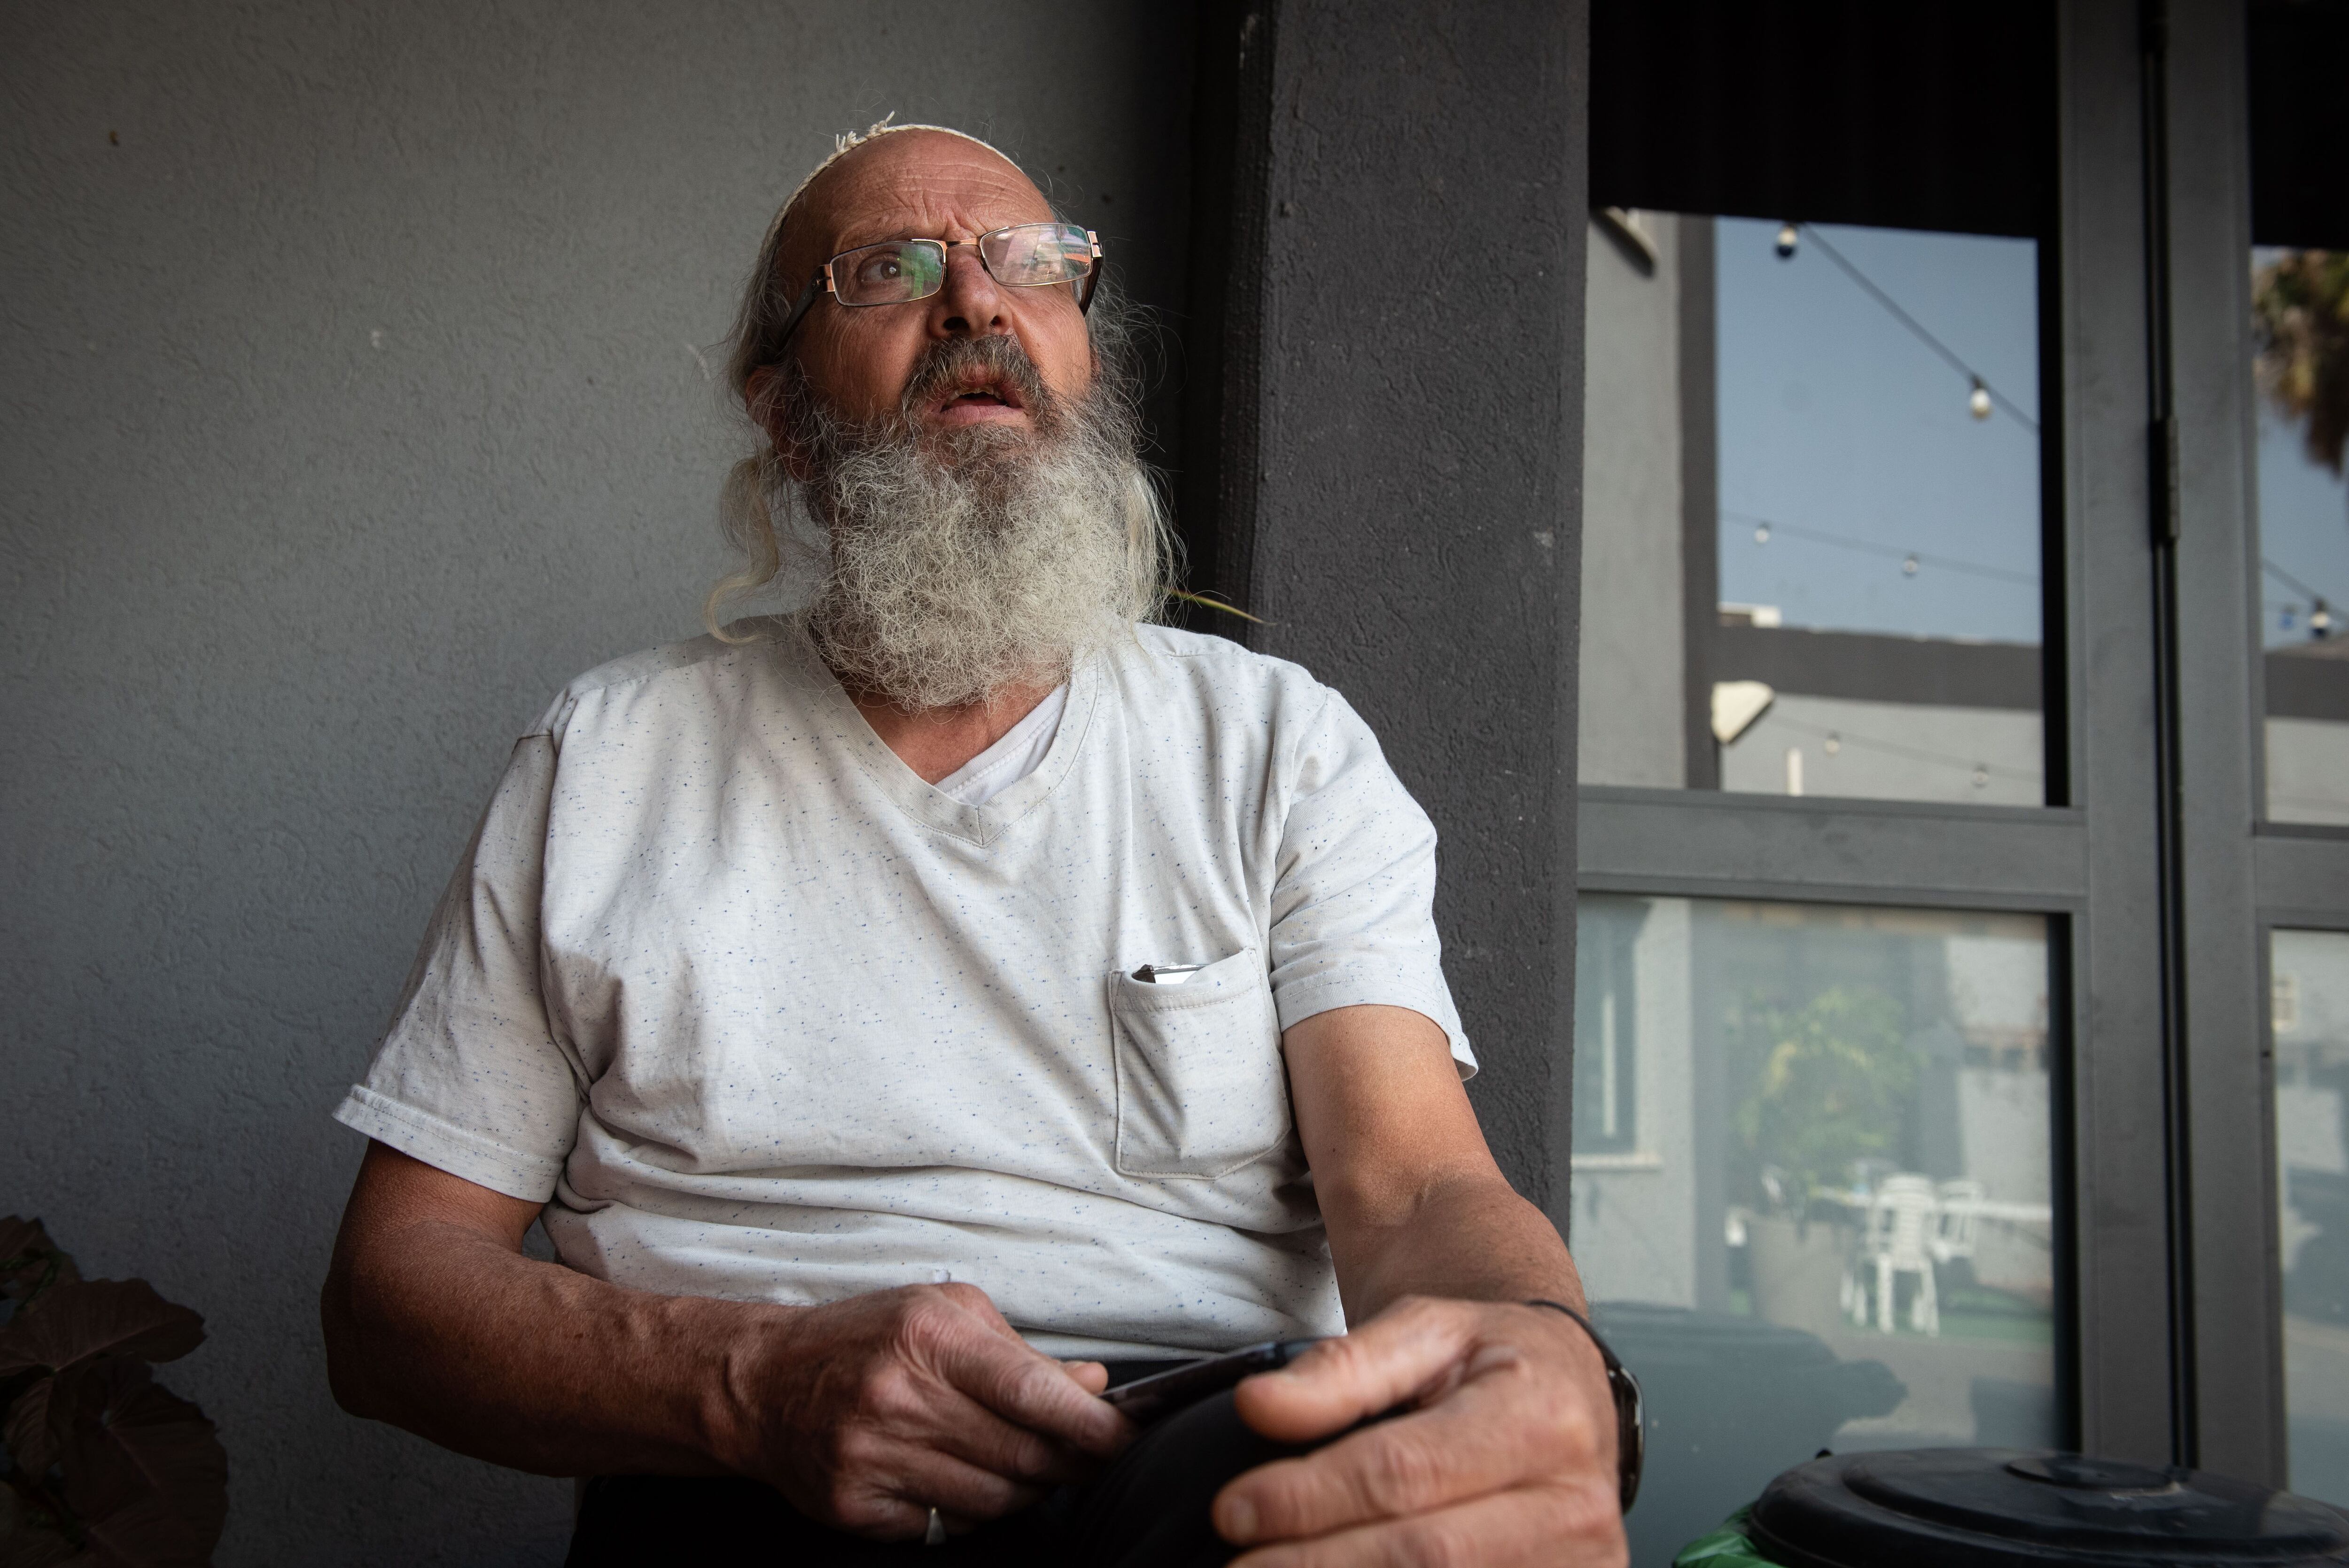 El vecino de Kyriat Shmona David Hatani, empleado de hostelería jubilado, que ha decidido quedarse en la ciudad pese a la orden de evacuación.